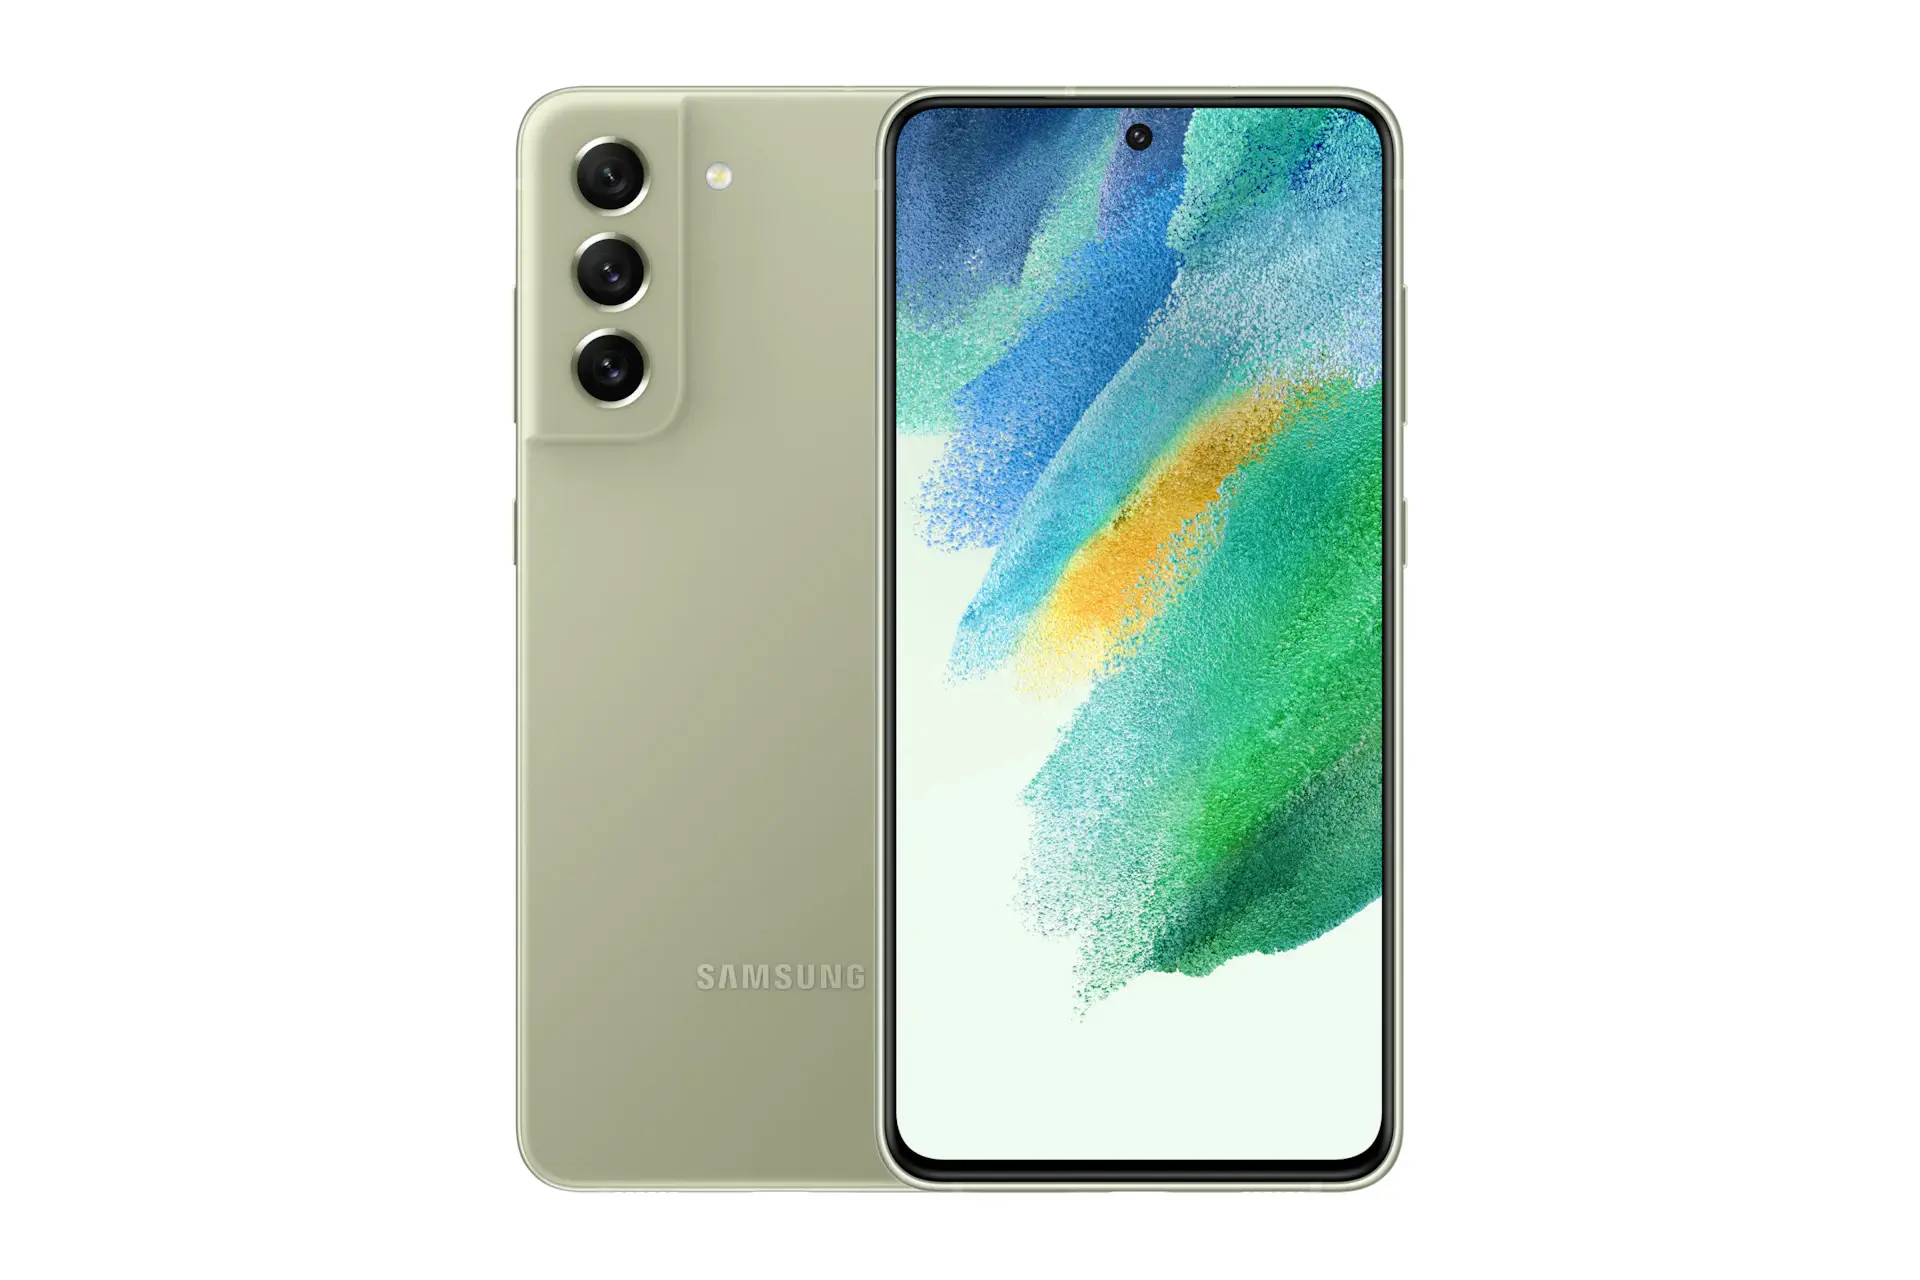 نمای کلی Samsung Galaxy S21 FE 5G / گوشی موبایل گلکسی اس 21 اف ای سامسونگ 5G با نمایشگر روشن و نمایش لوگو و دوربین پنل پشت رنگ زیتونی